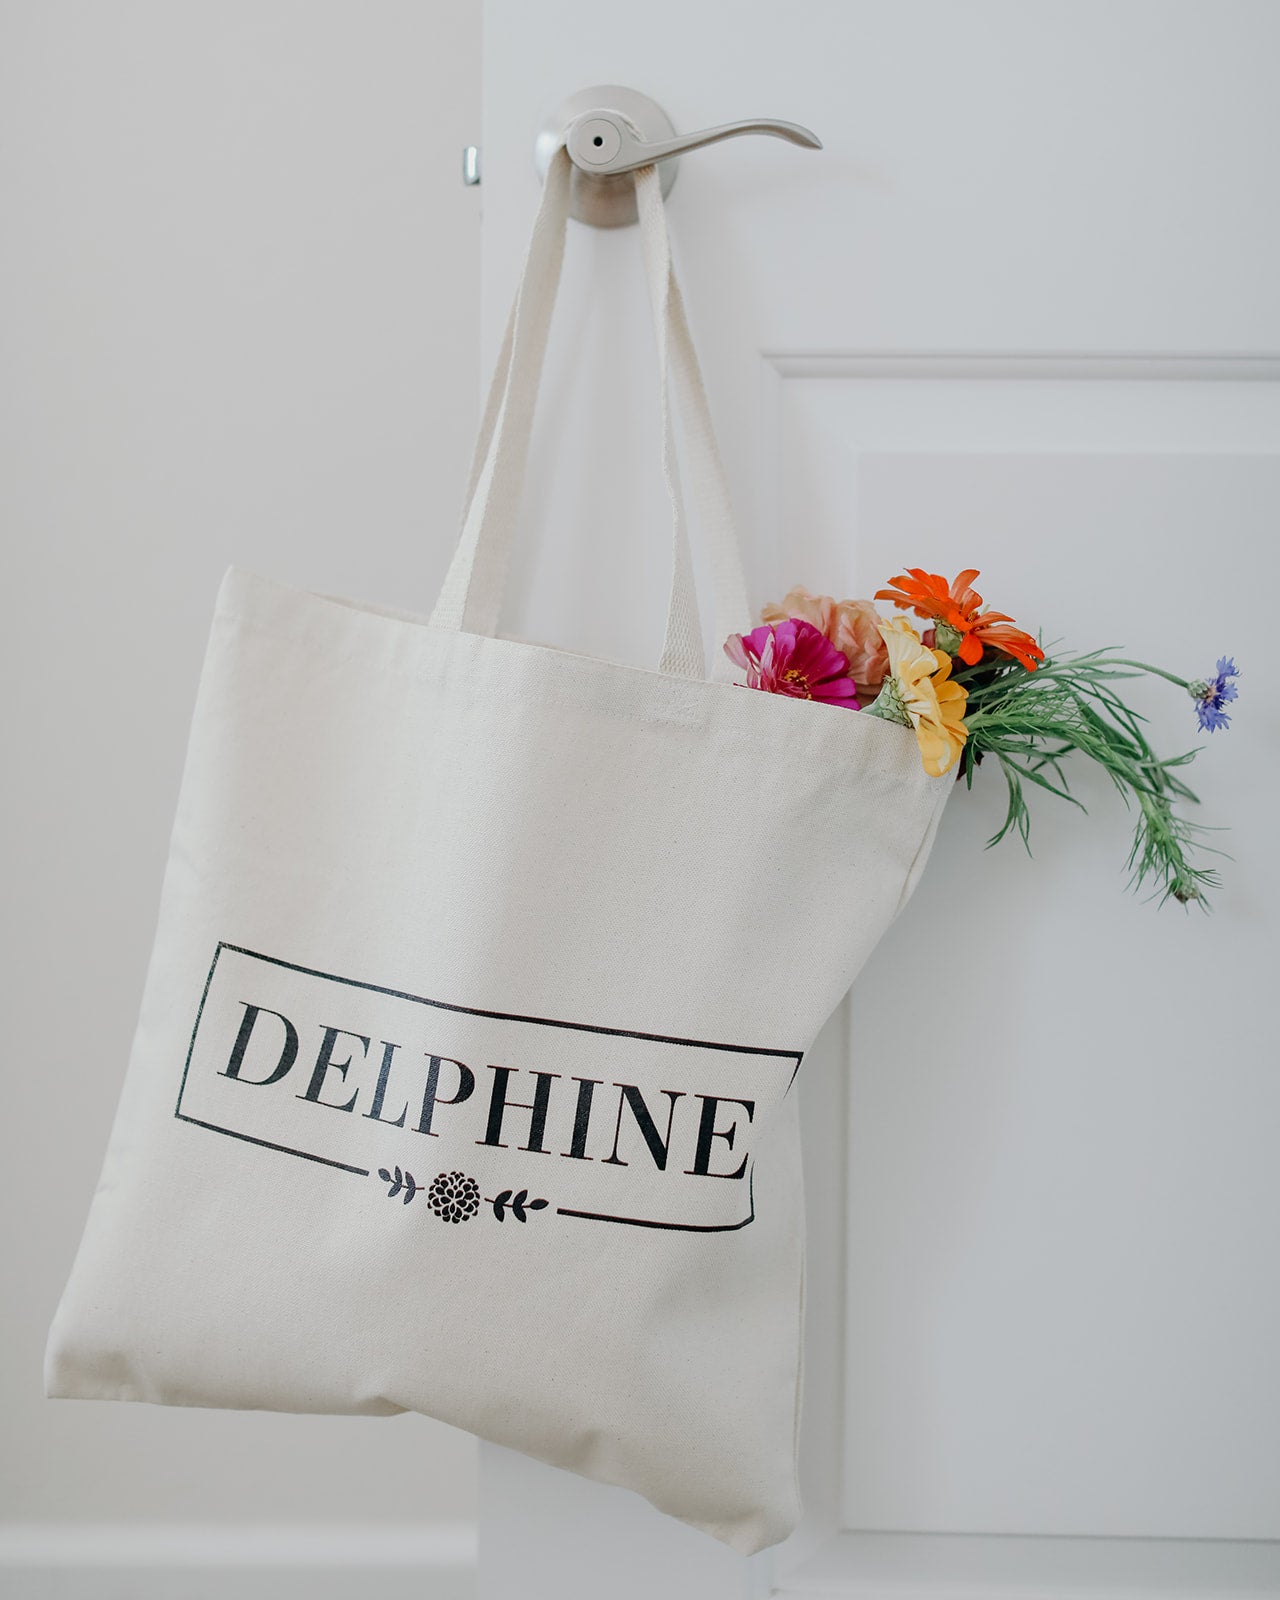 Delphine Tote Bag